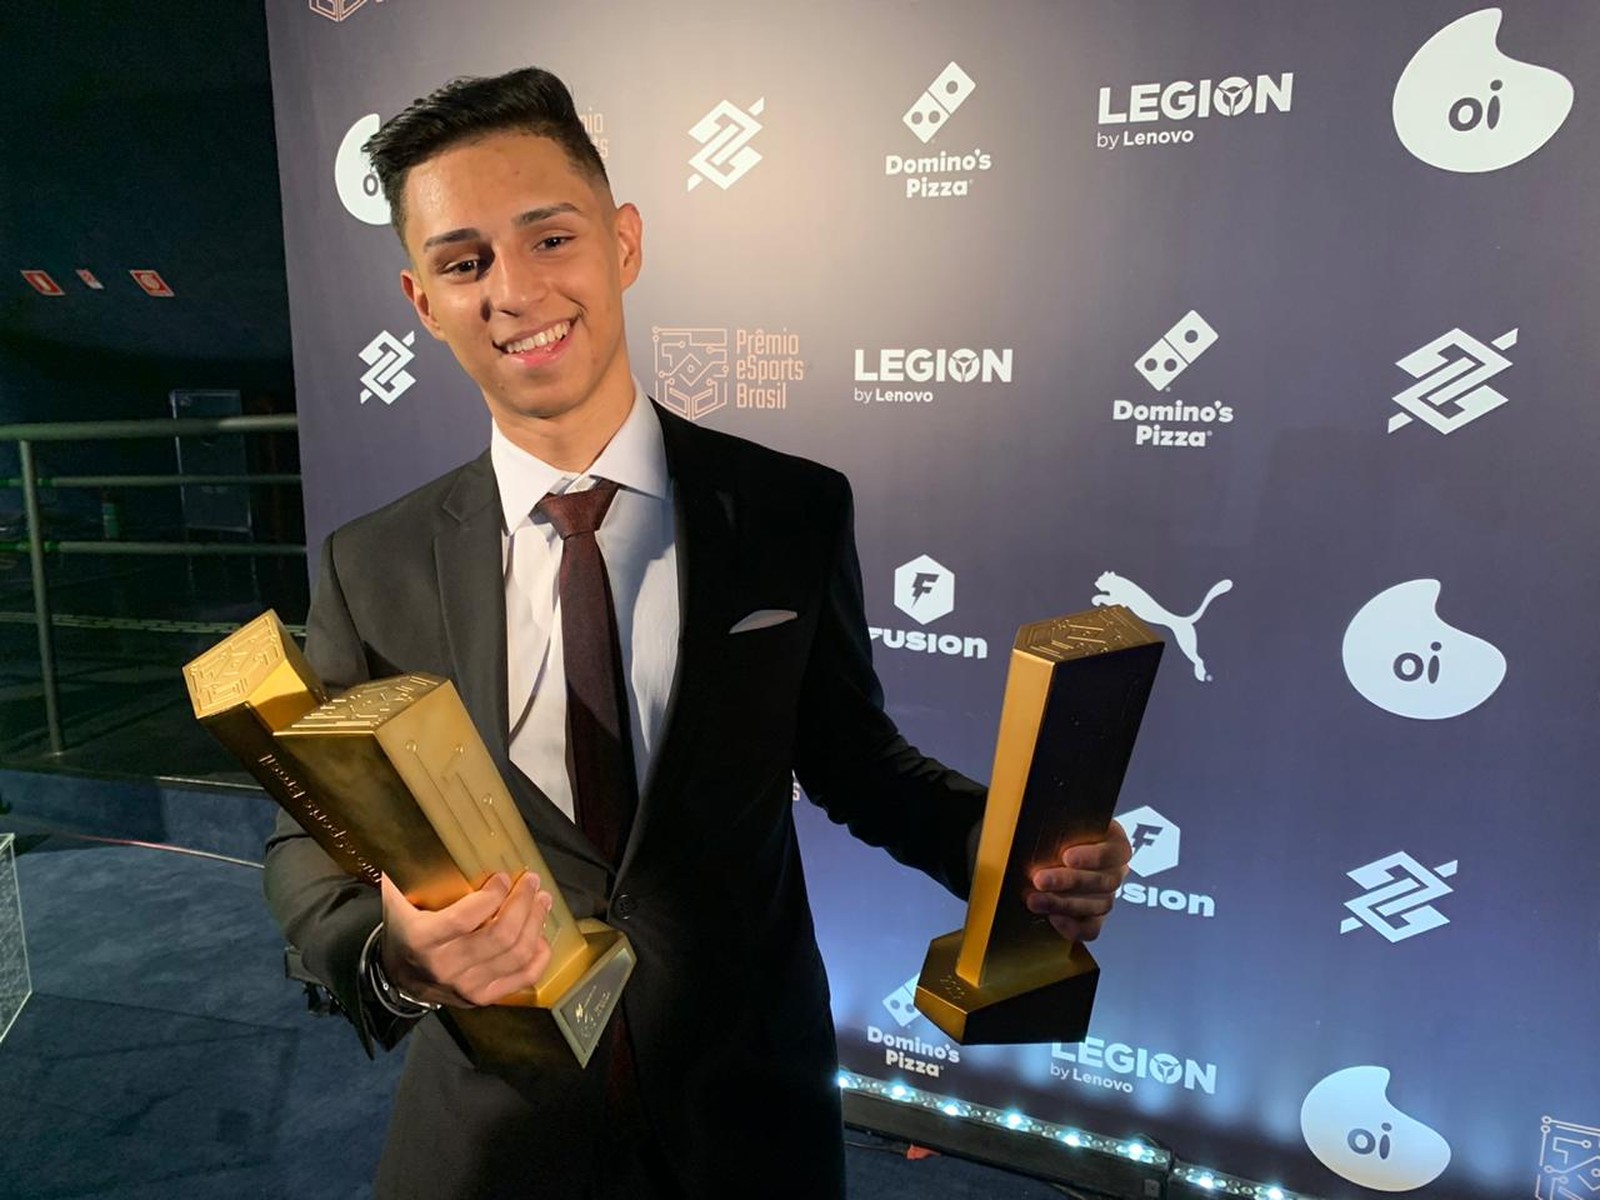 Nobru leva troféu de Craque da Galera em Prêmio eSports Brasil 2023